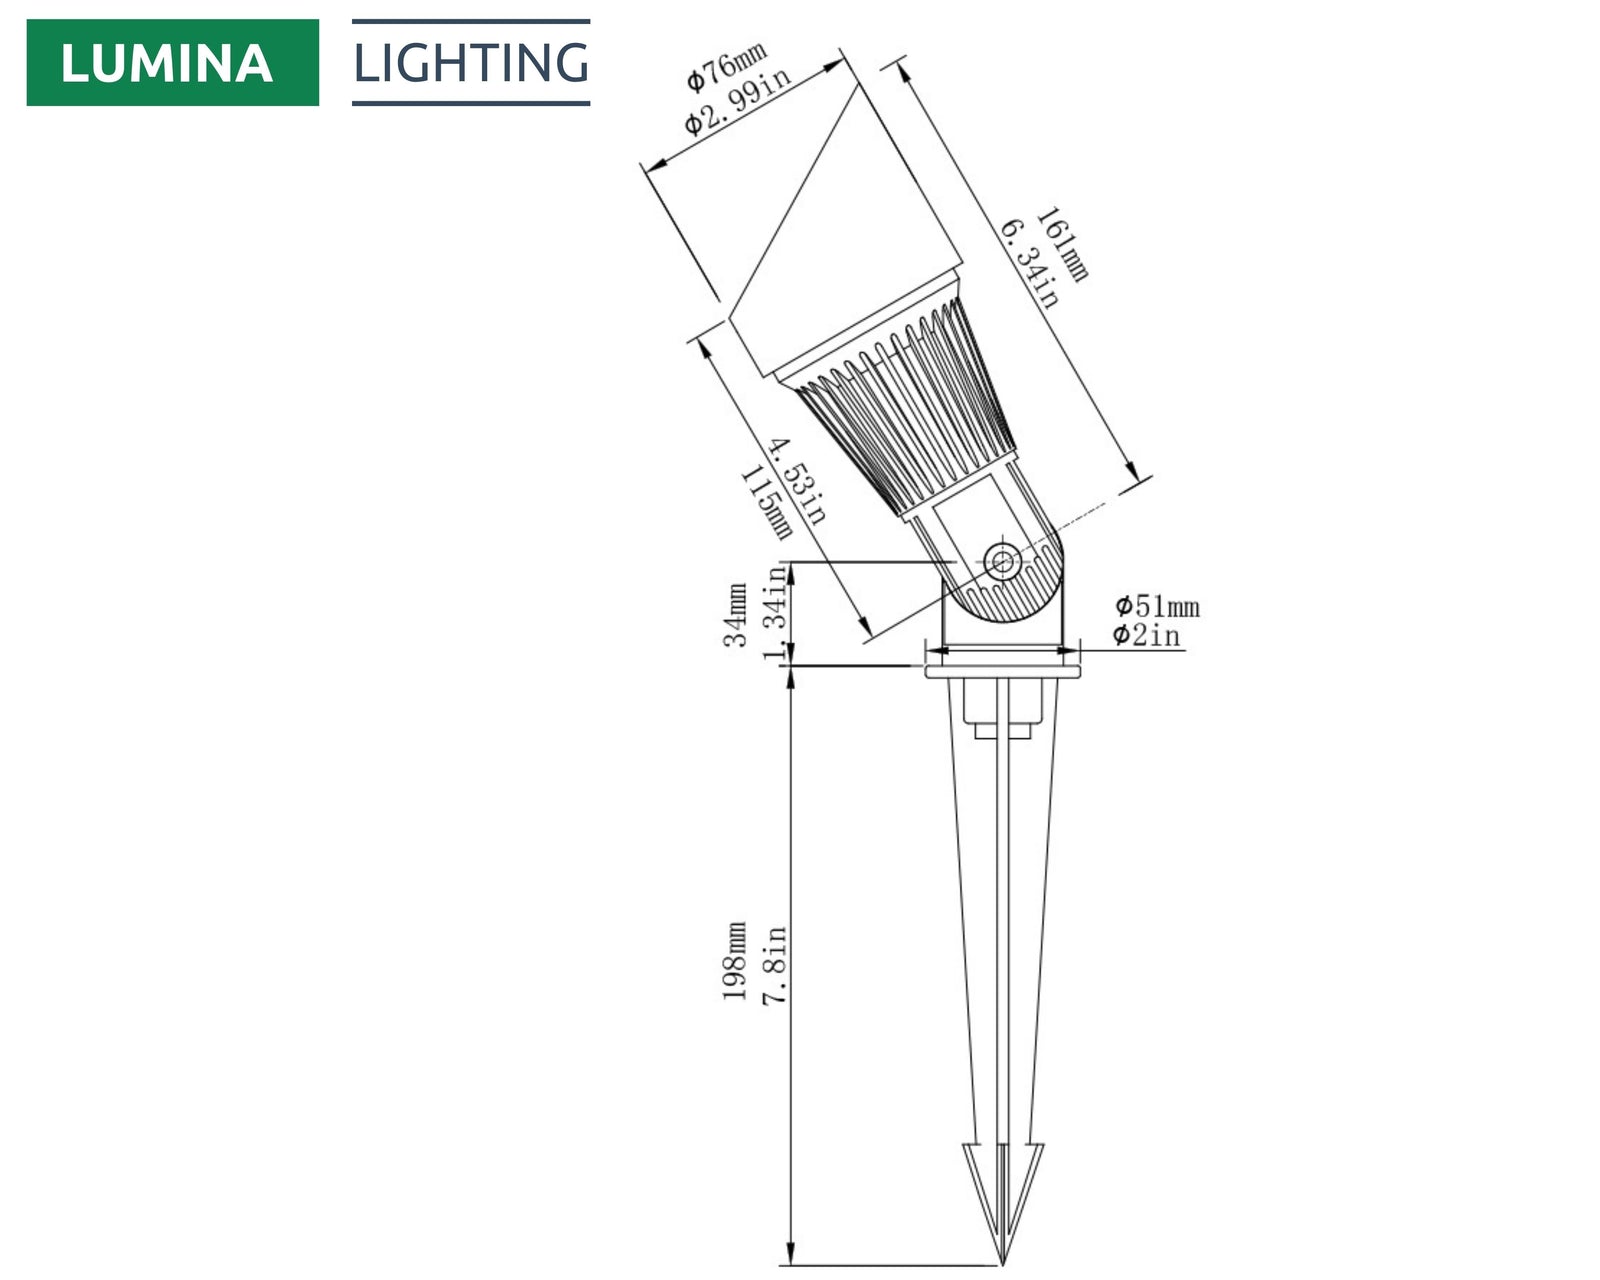 Lumina Lighting® 4W Landscape Spotlights | Low Voltage Landscape Lighting Lights - 12V 3000K | Replaceable MR16 LED Bulb (Bronze, 2-Pack)